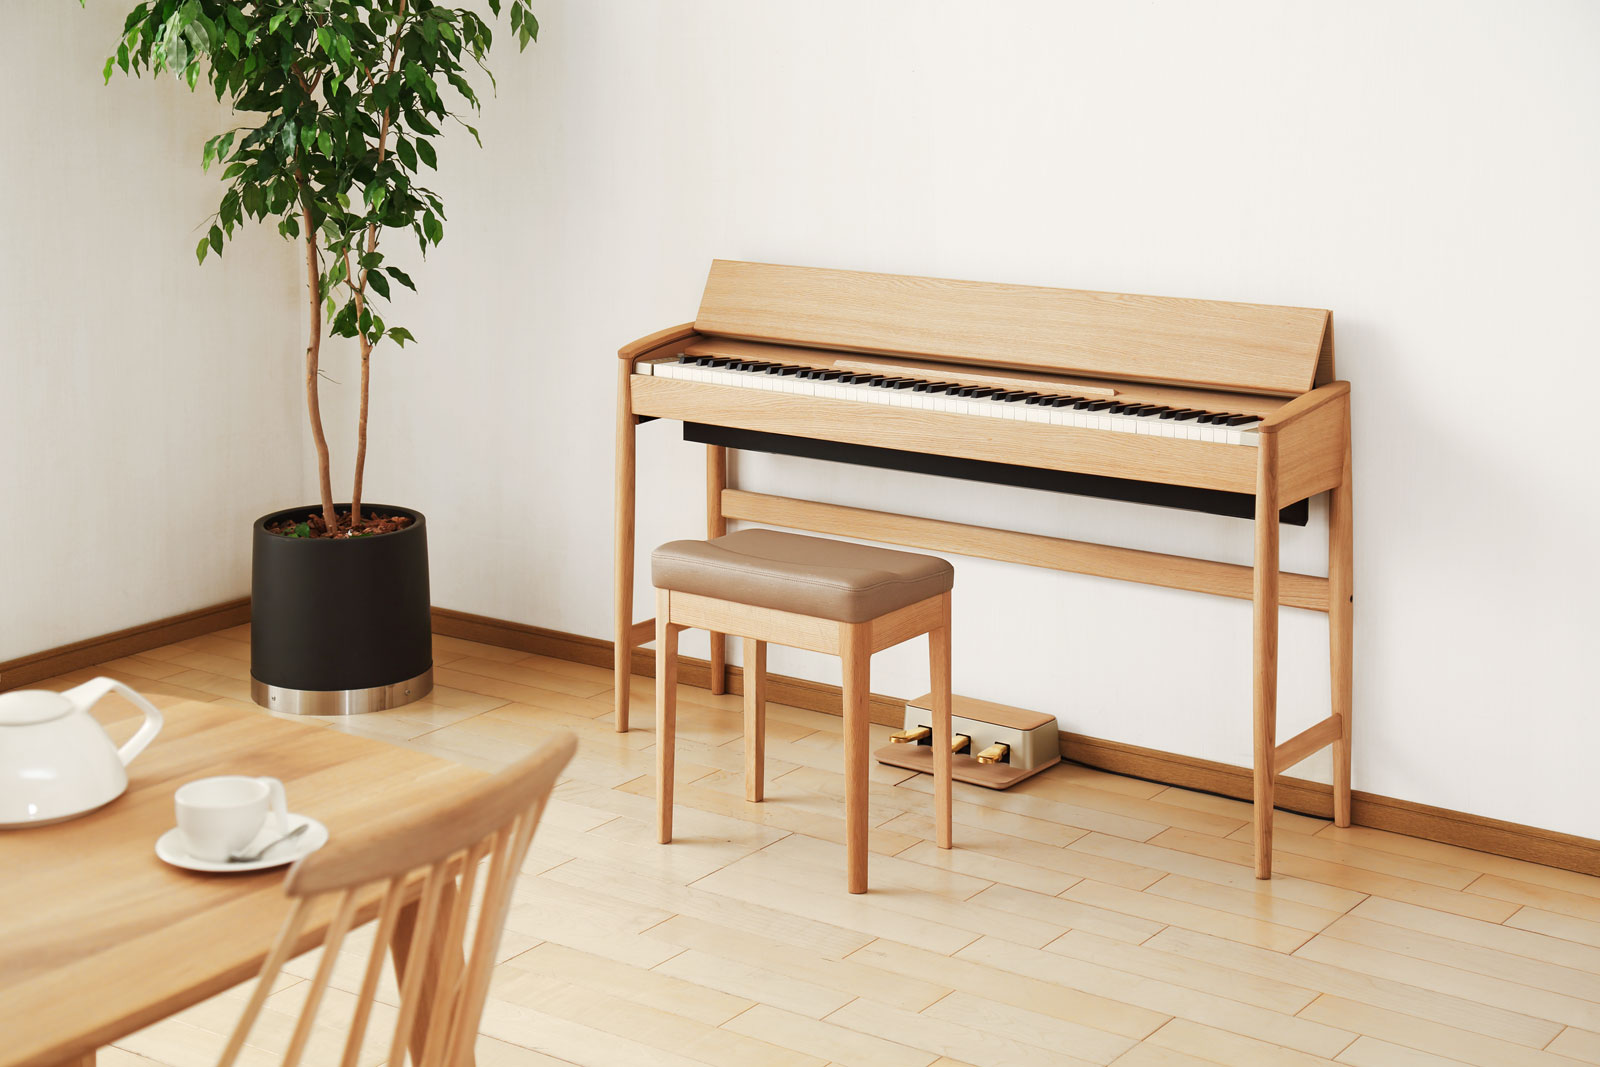 **Roland　KF-10（きよら） **日本の職人の技、天然木を活かしたこだわりの家具調デザインと最新のデジタルピアノの融合。「きよら　KF-10」 **【デザイン】Kiyora　家具仕上げのデジタルピアノ ***インテリアに溶け込む新しいピアノ の形。 「温かみを持った天然木がつなぐ、人とピア […]